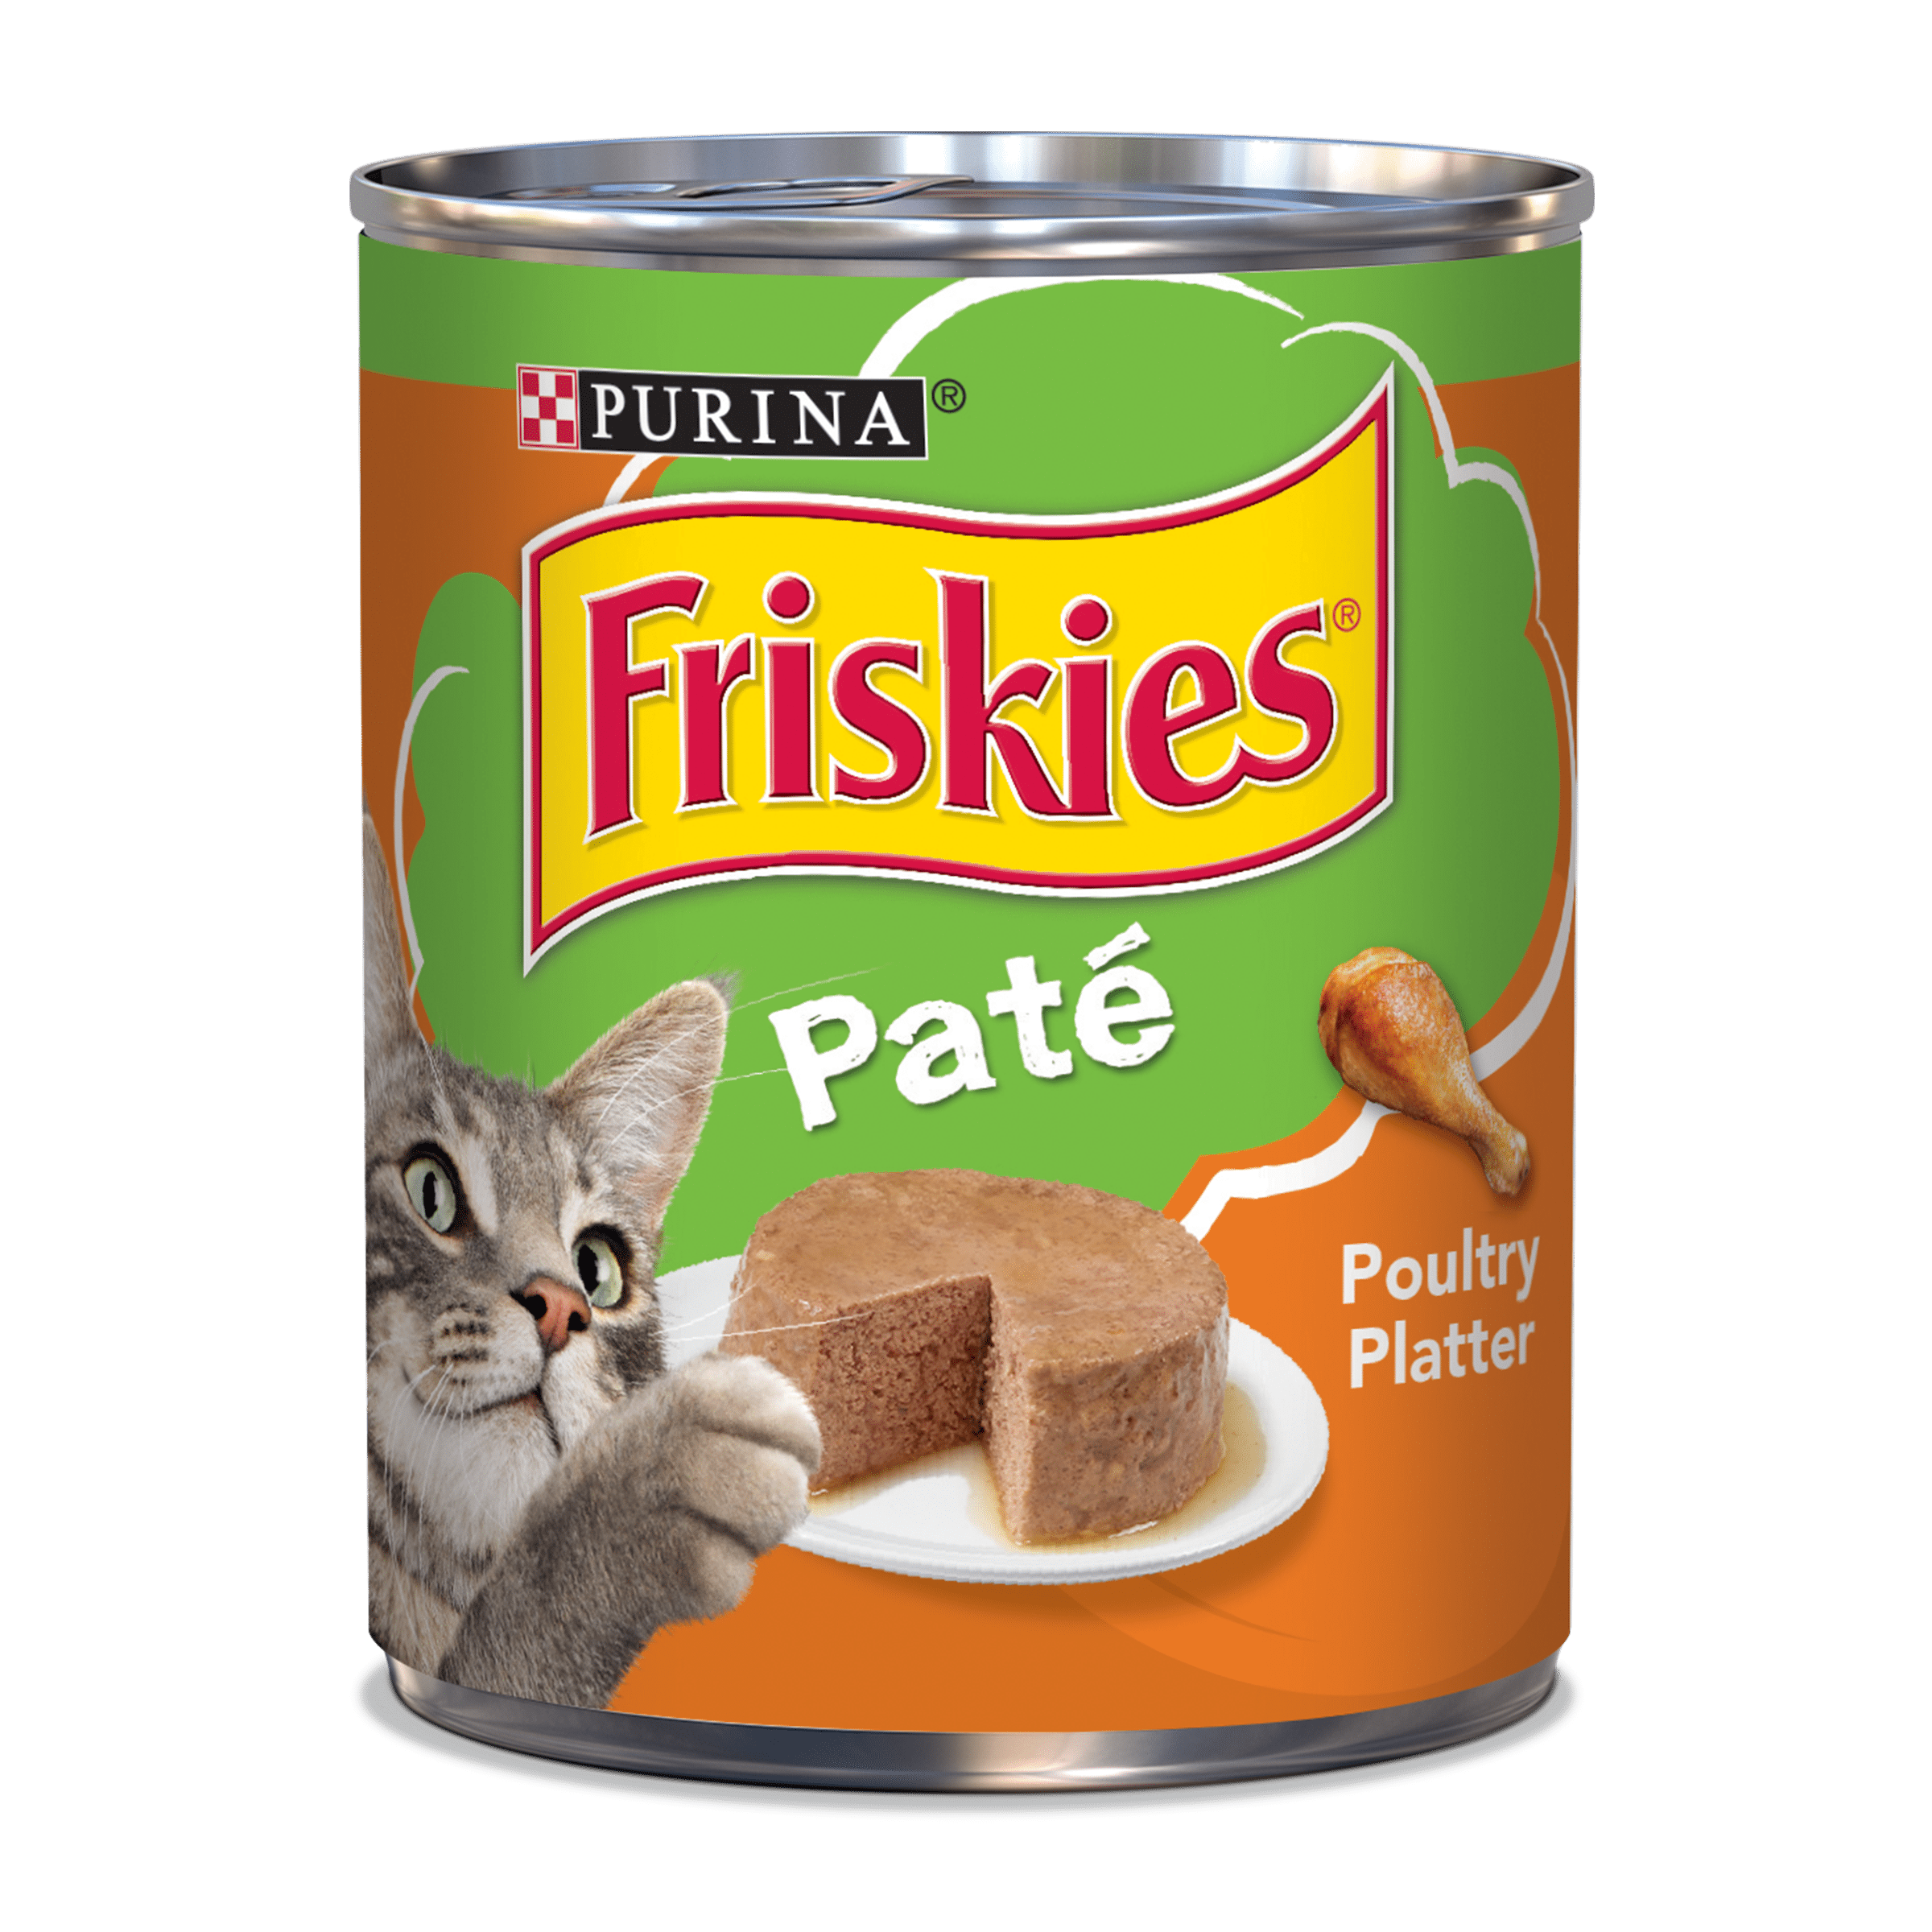 Friskies Pate Wet Cat Food, Poultry 